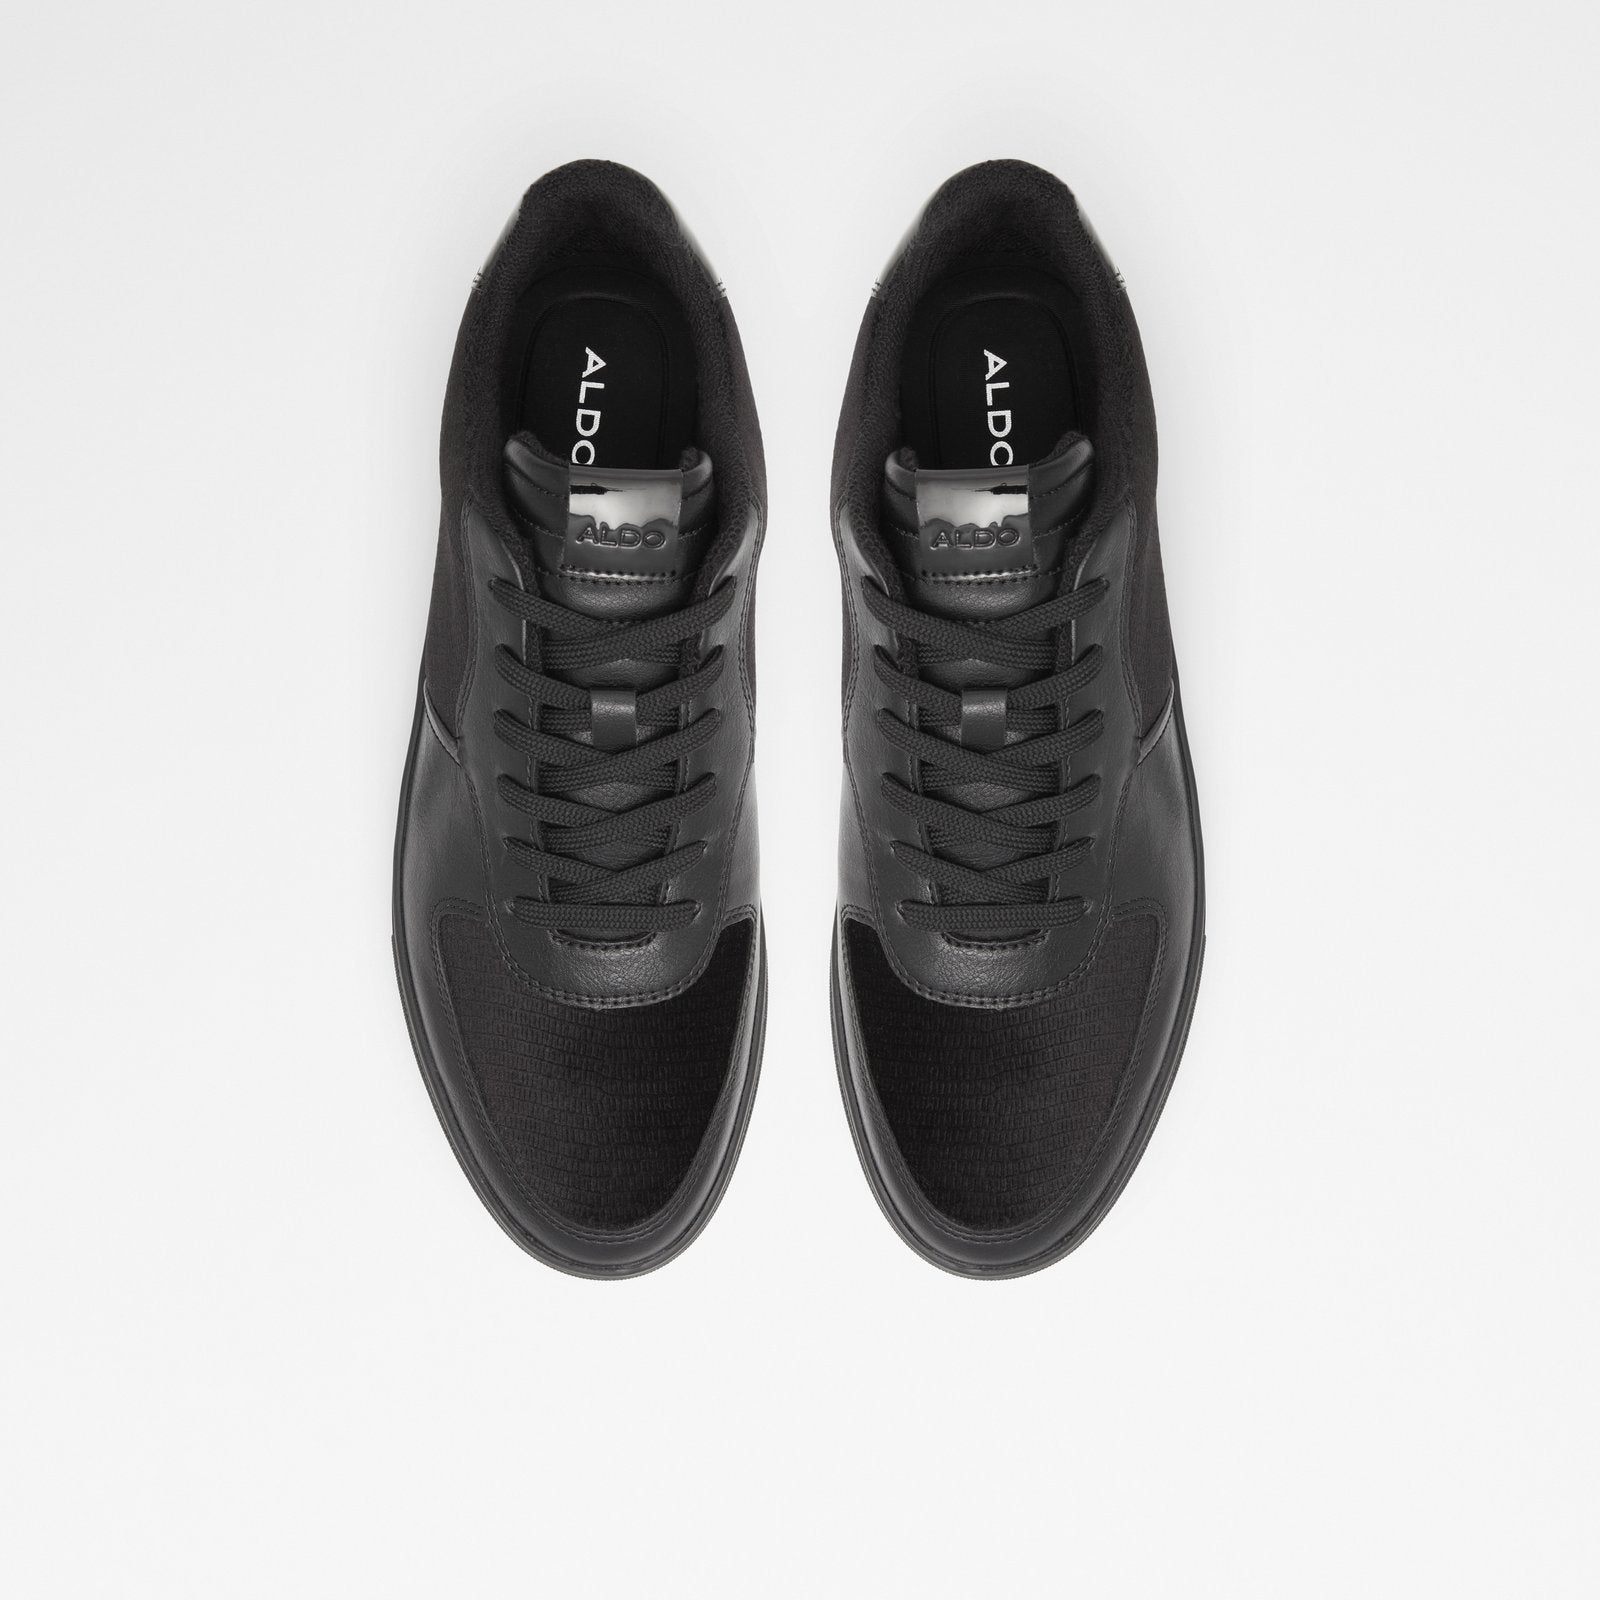 Kion Men Shoes - Black - ALDO KSA